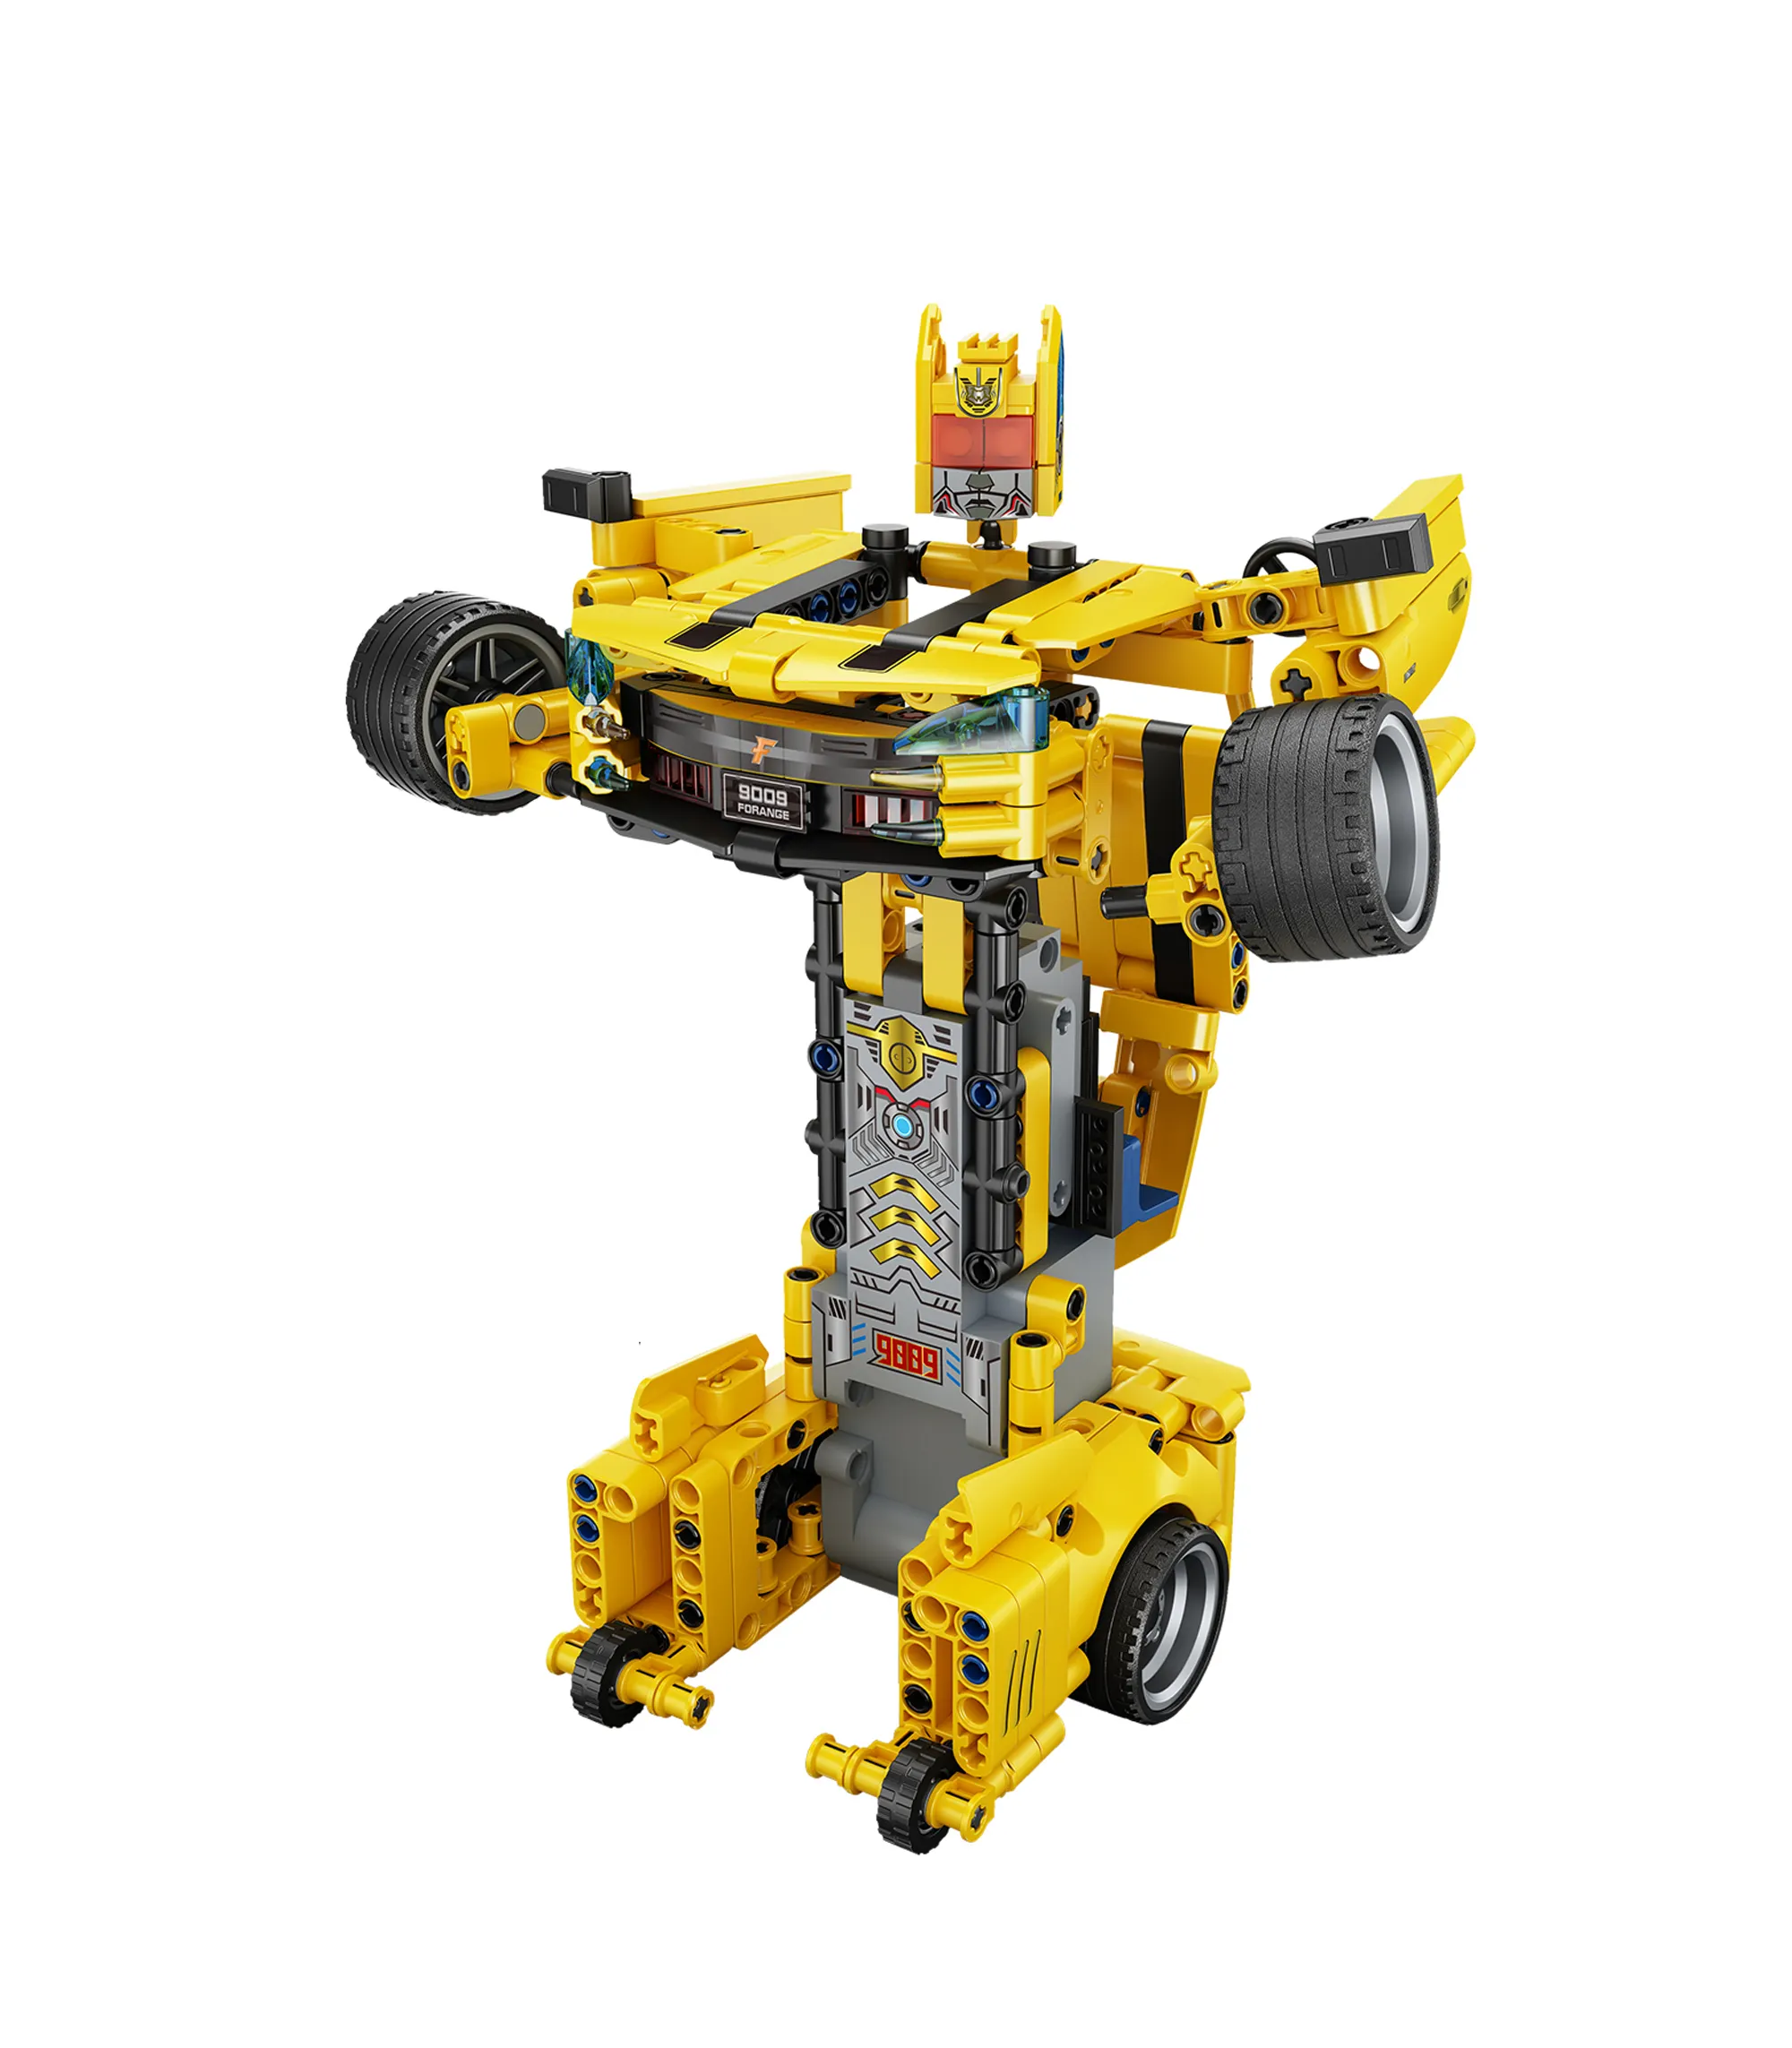 Robots amarillos transformados directos, coche de Control remoto, ladrillos de abeja, juguetes de transformación RC Legoed, juegos de bloques de construcción para niños